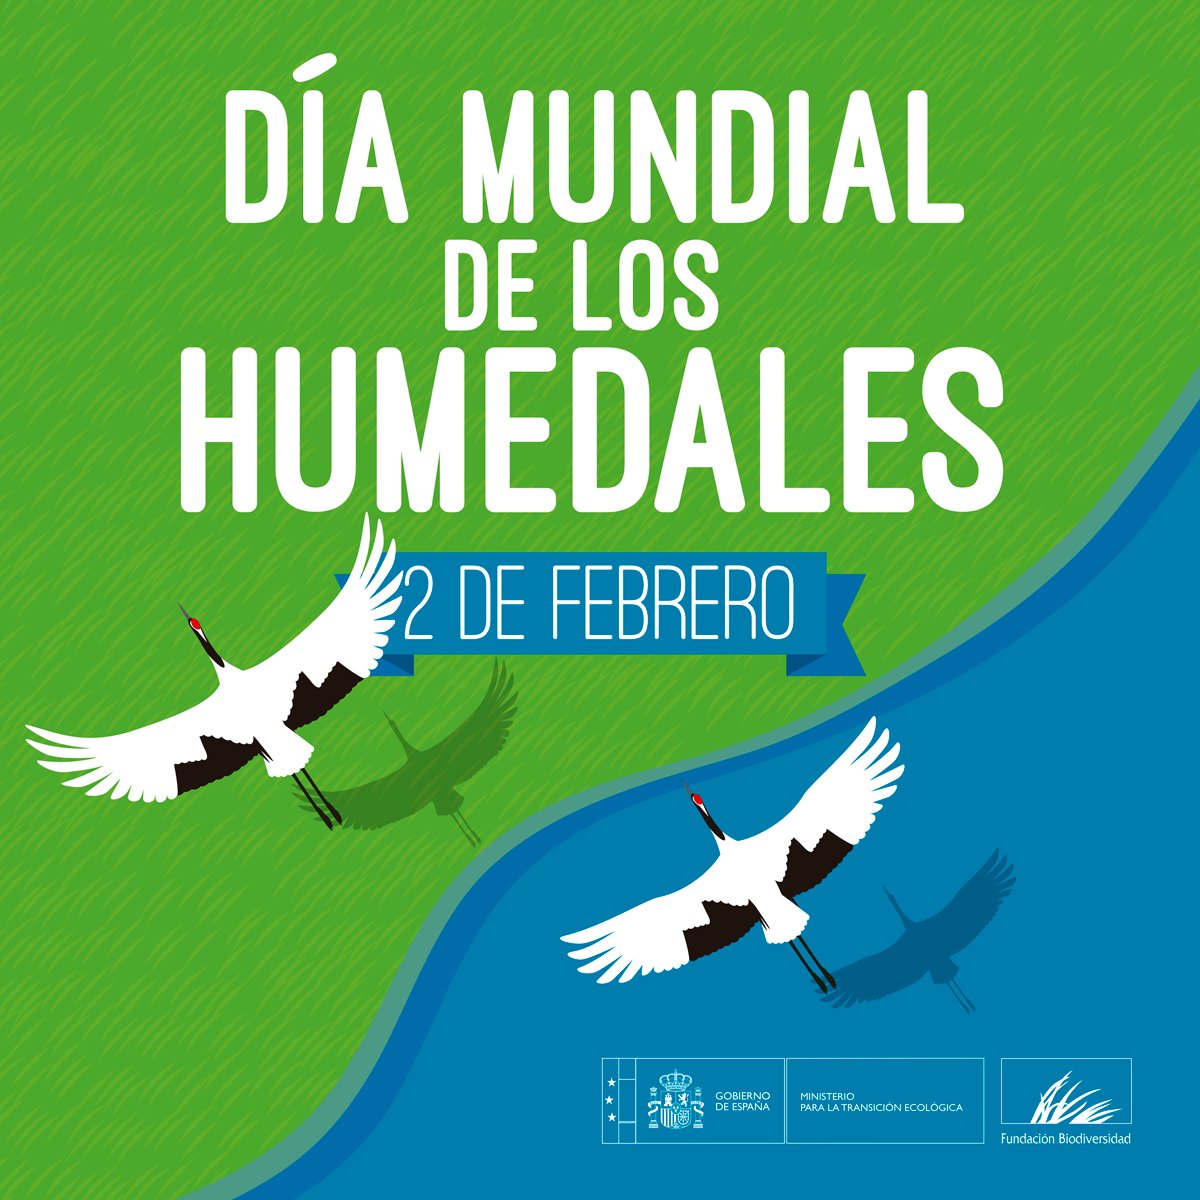 Día Mundial de los Humedales. Cartel del Miteco